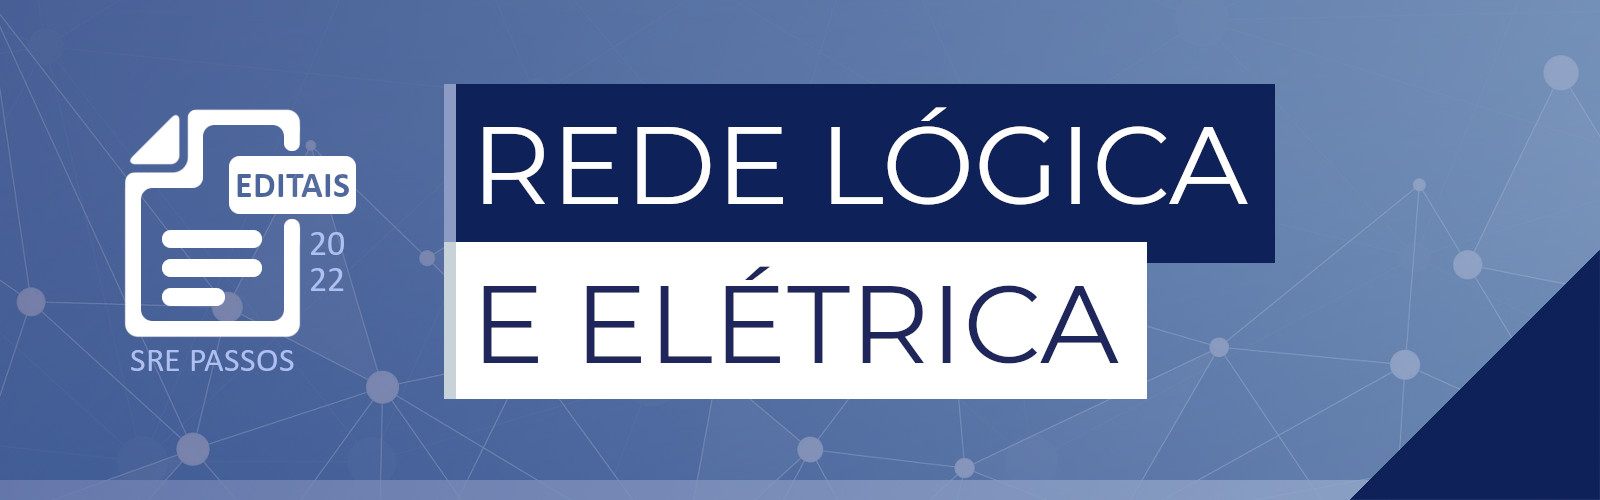 Editais de Serviços de Reparo/Ampliação de Rede Lógica e Elétrica